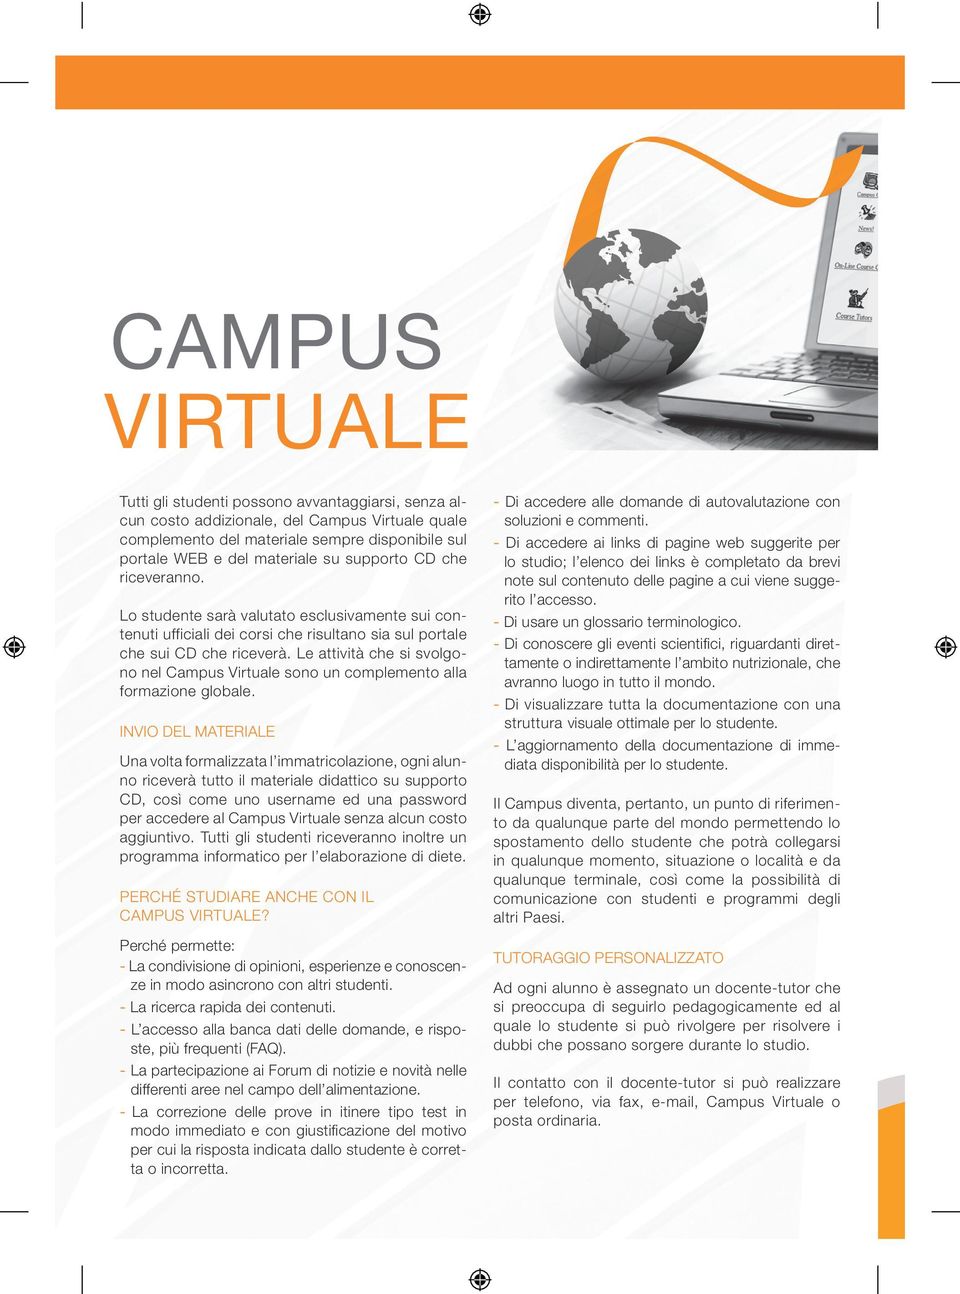 Le attività che si svolgono nel Campus Virtuale sono un complemento alla formazione globale.